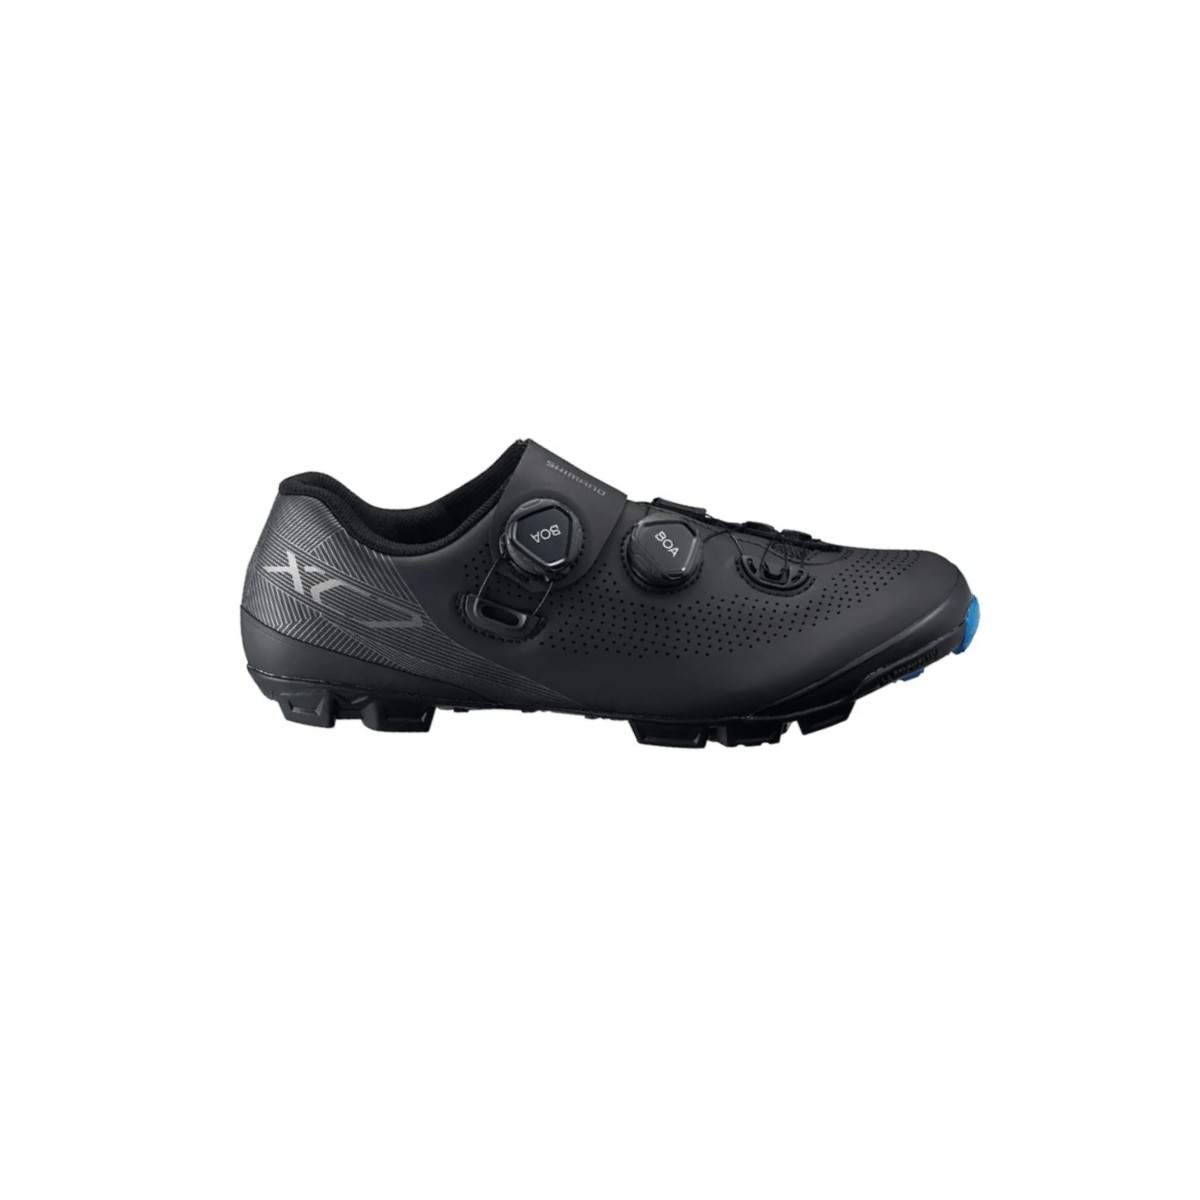 Shimano MTB XC7 Black Double BOA Shoes, Size 47 - EUR